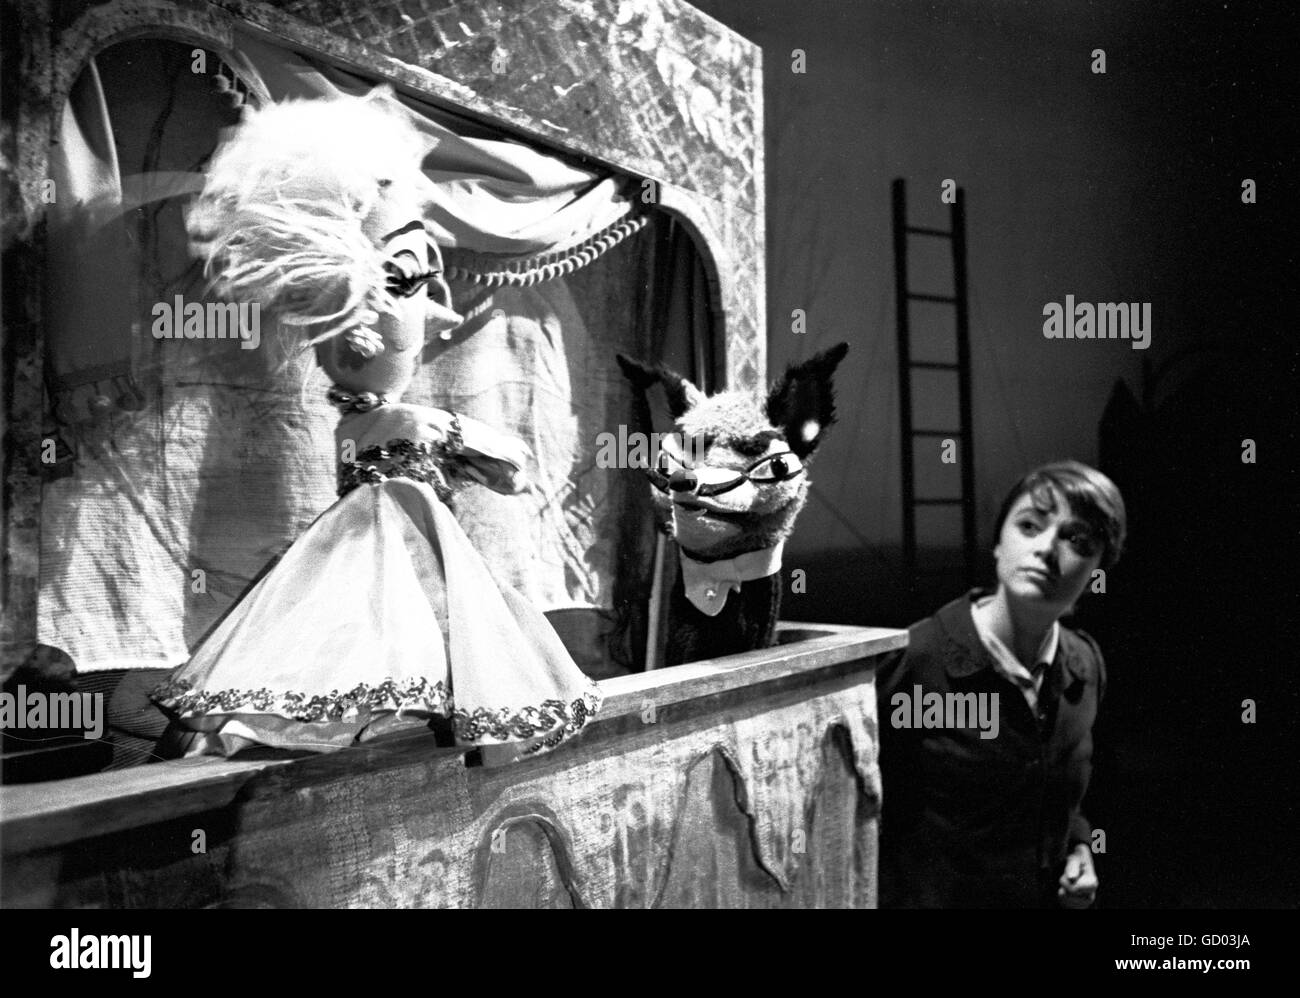 Anna Maria Alberghetti sur scène dans Carvial ! En 1961. Banque D'Images